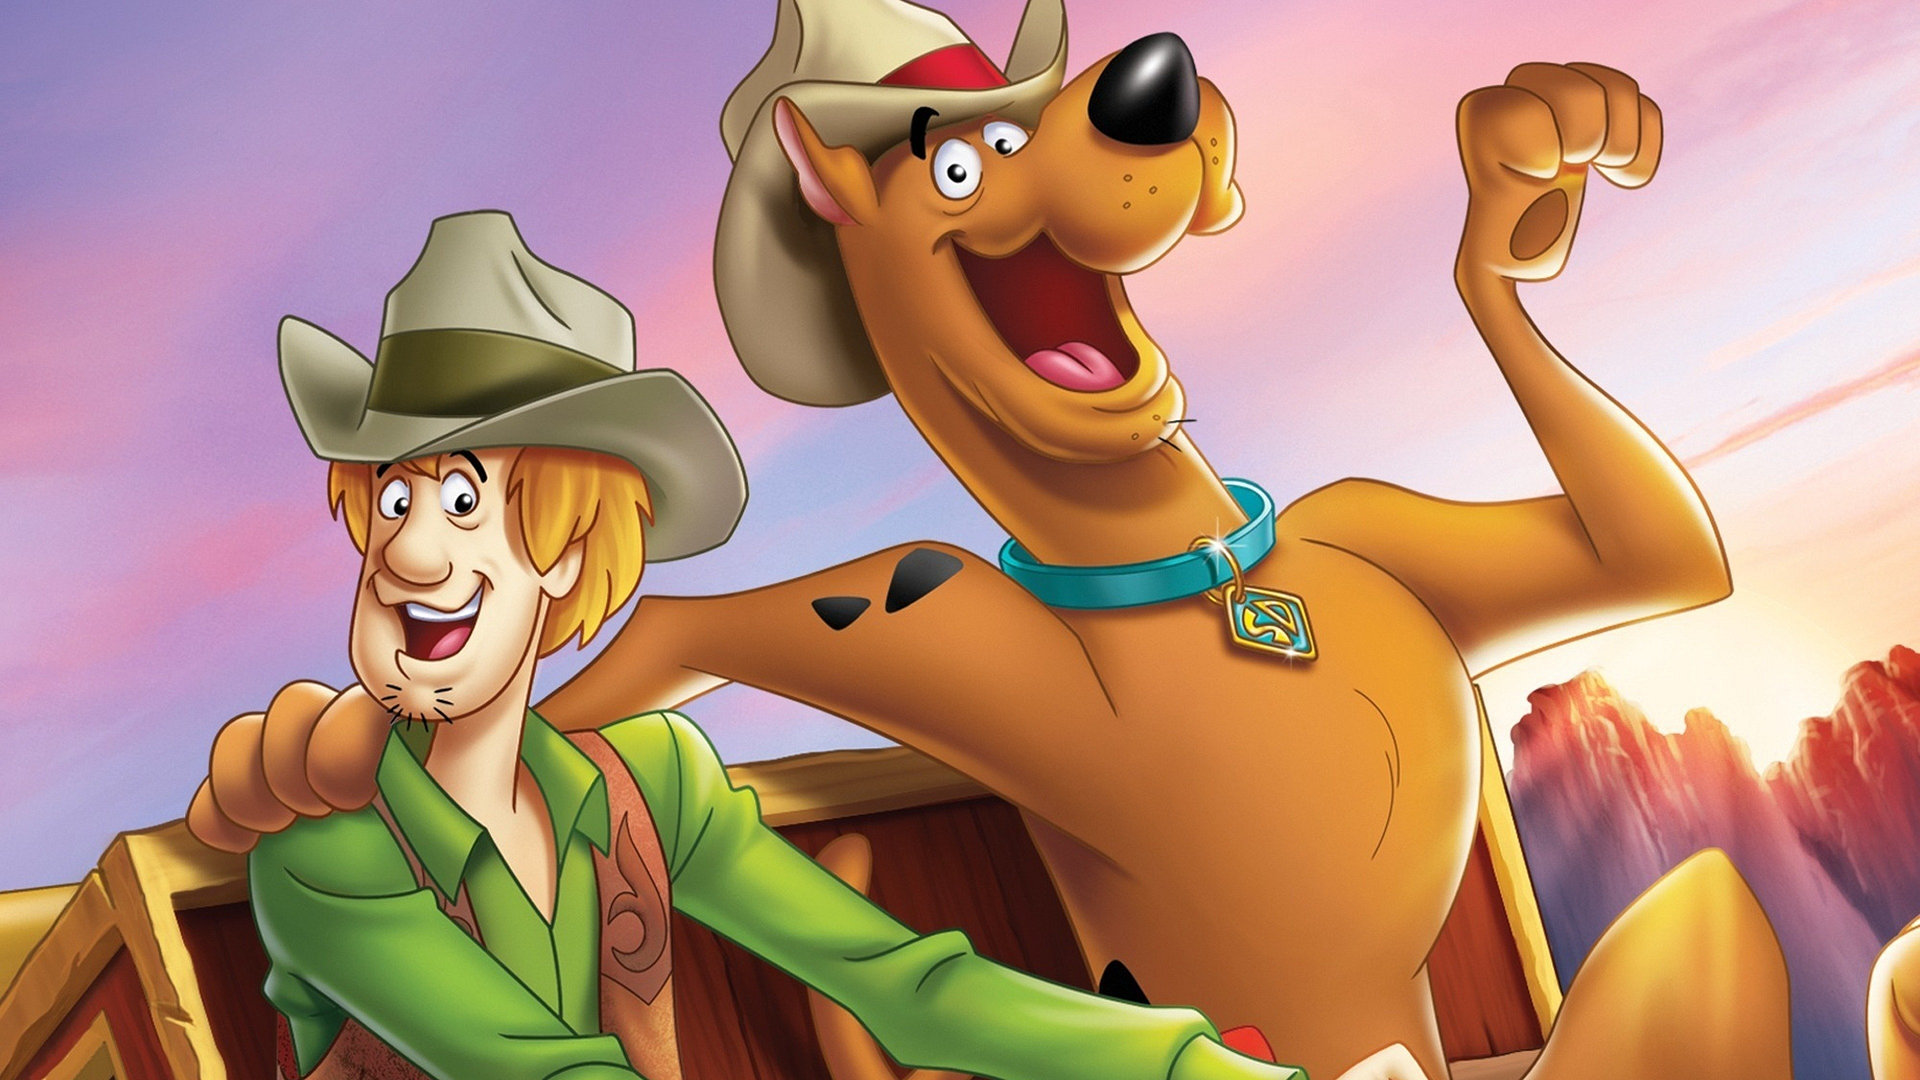 Scooby-Doo - I vilda västern - Svenskt tal